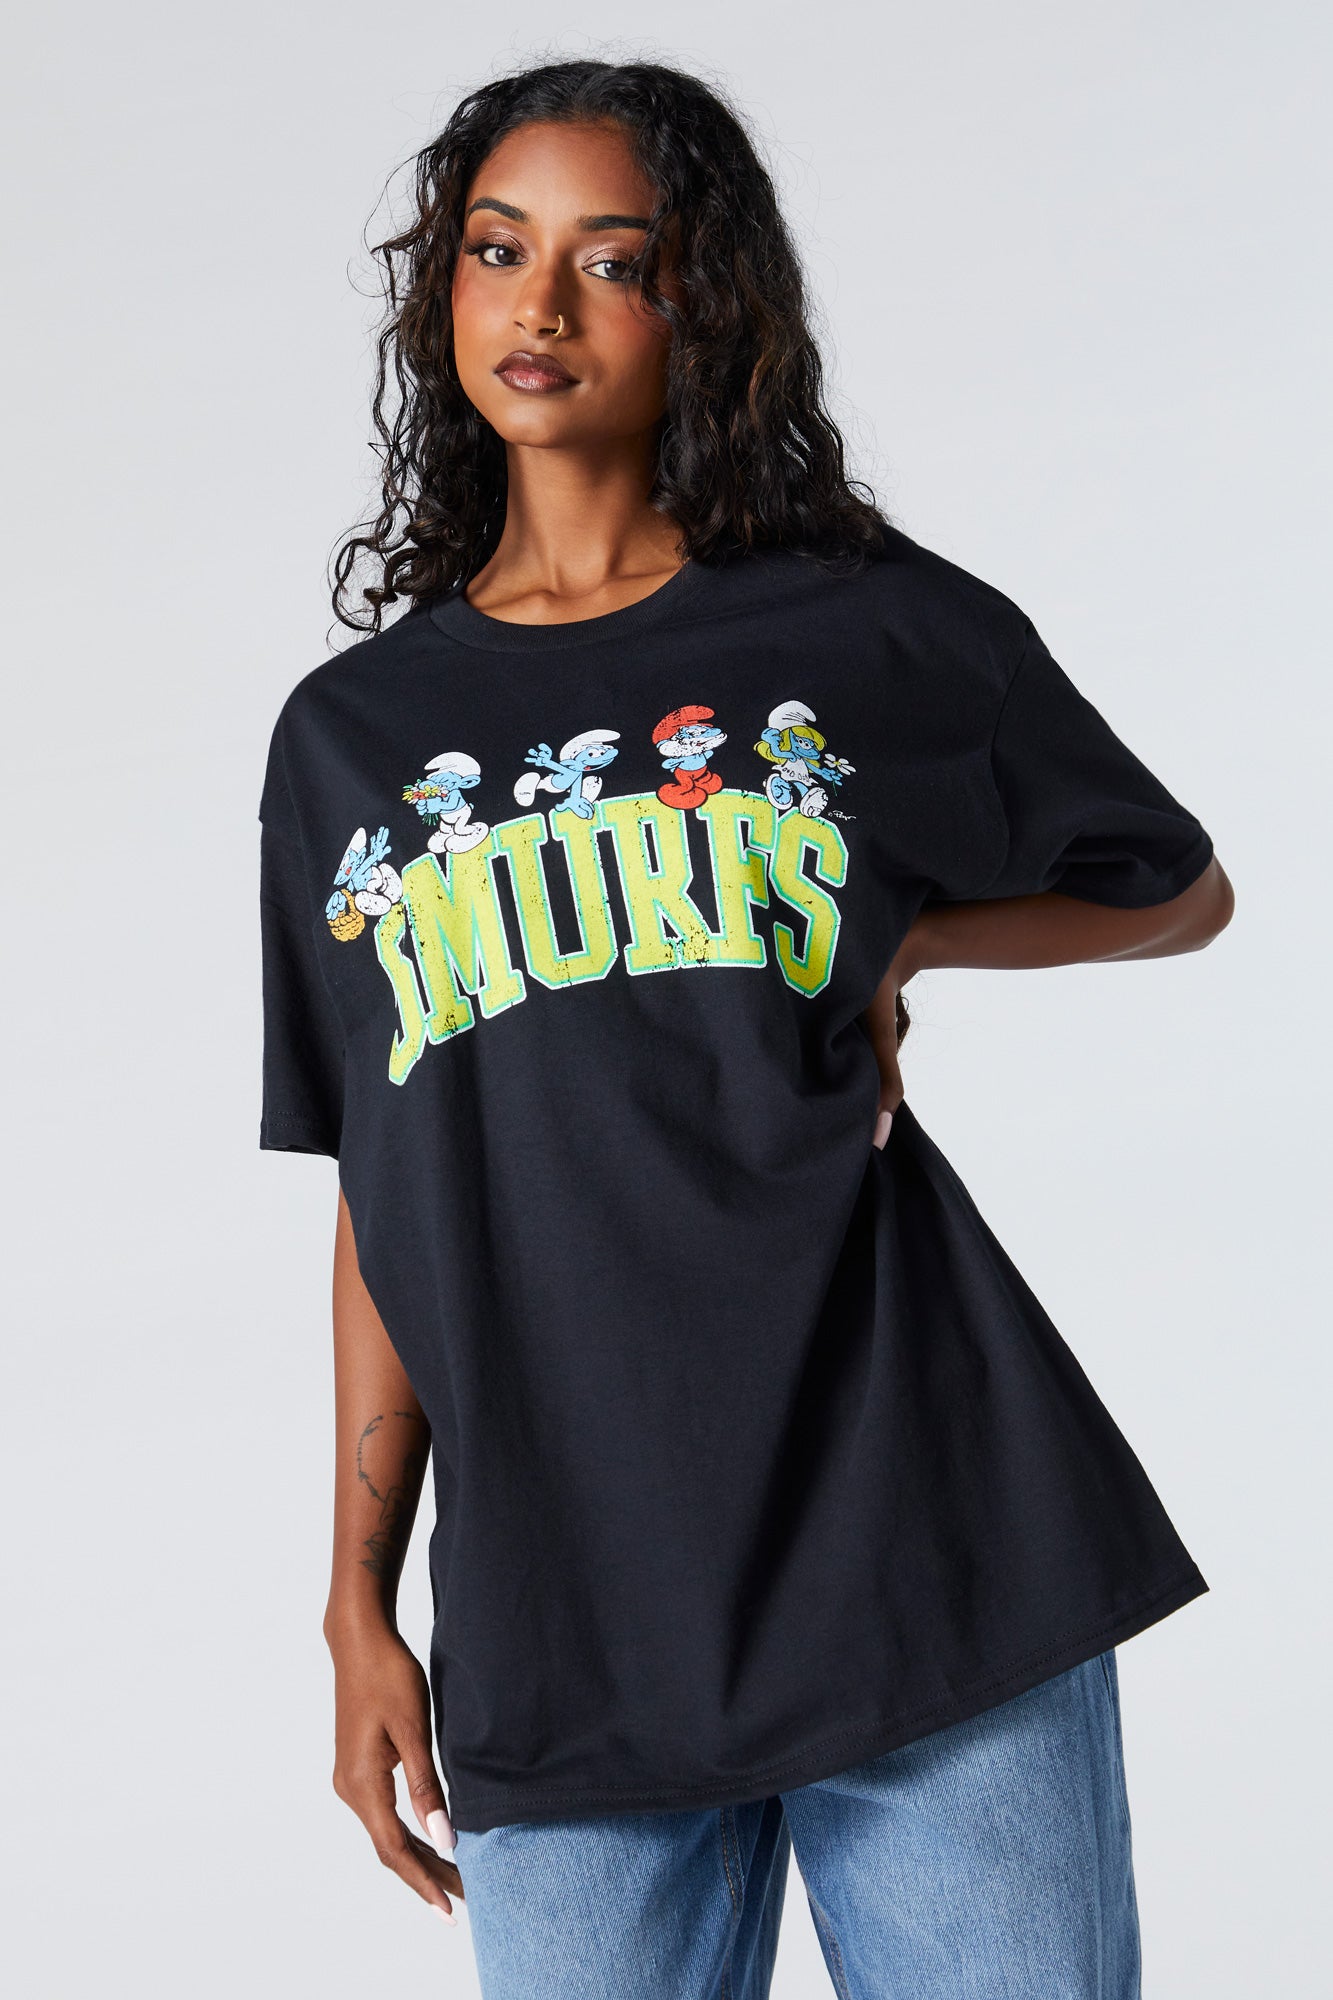 Smurfs Graphic Boyfriend T-Shirt – Urban Planet